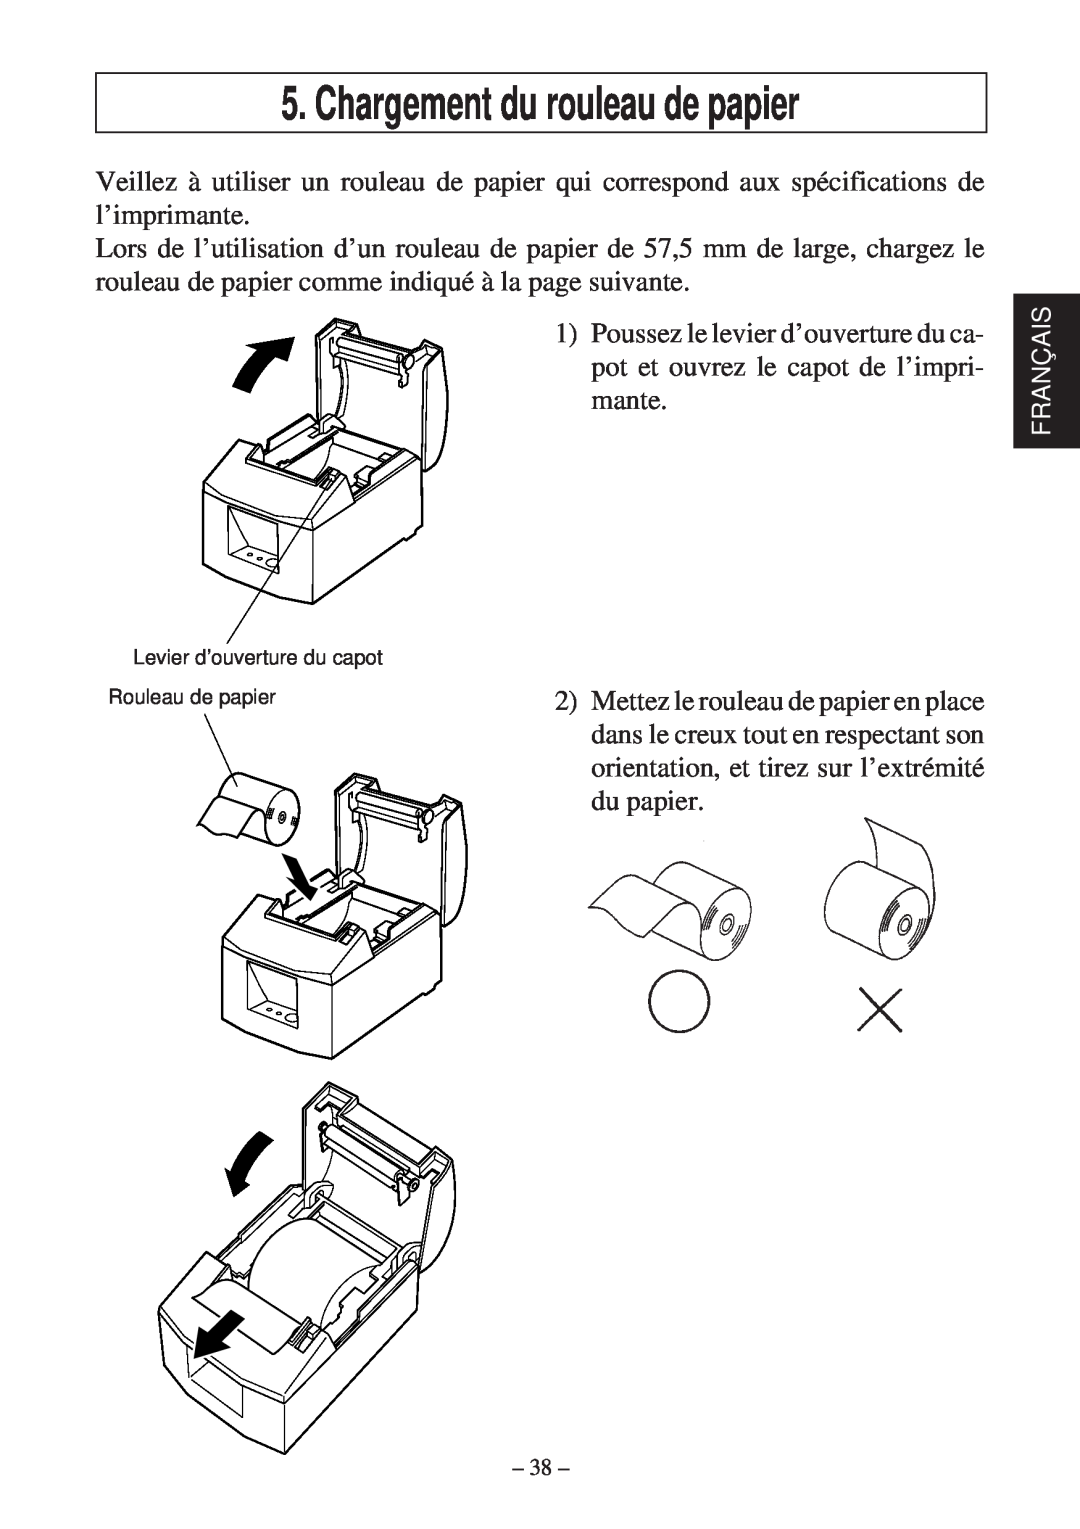 Star Micronics TSP600 user manual Chargement du rouleau de papier, Levier d’ouverture du capot Rouleau de papier 